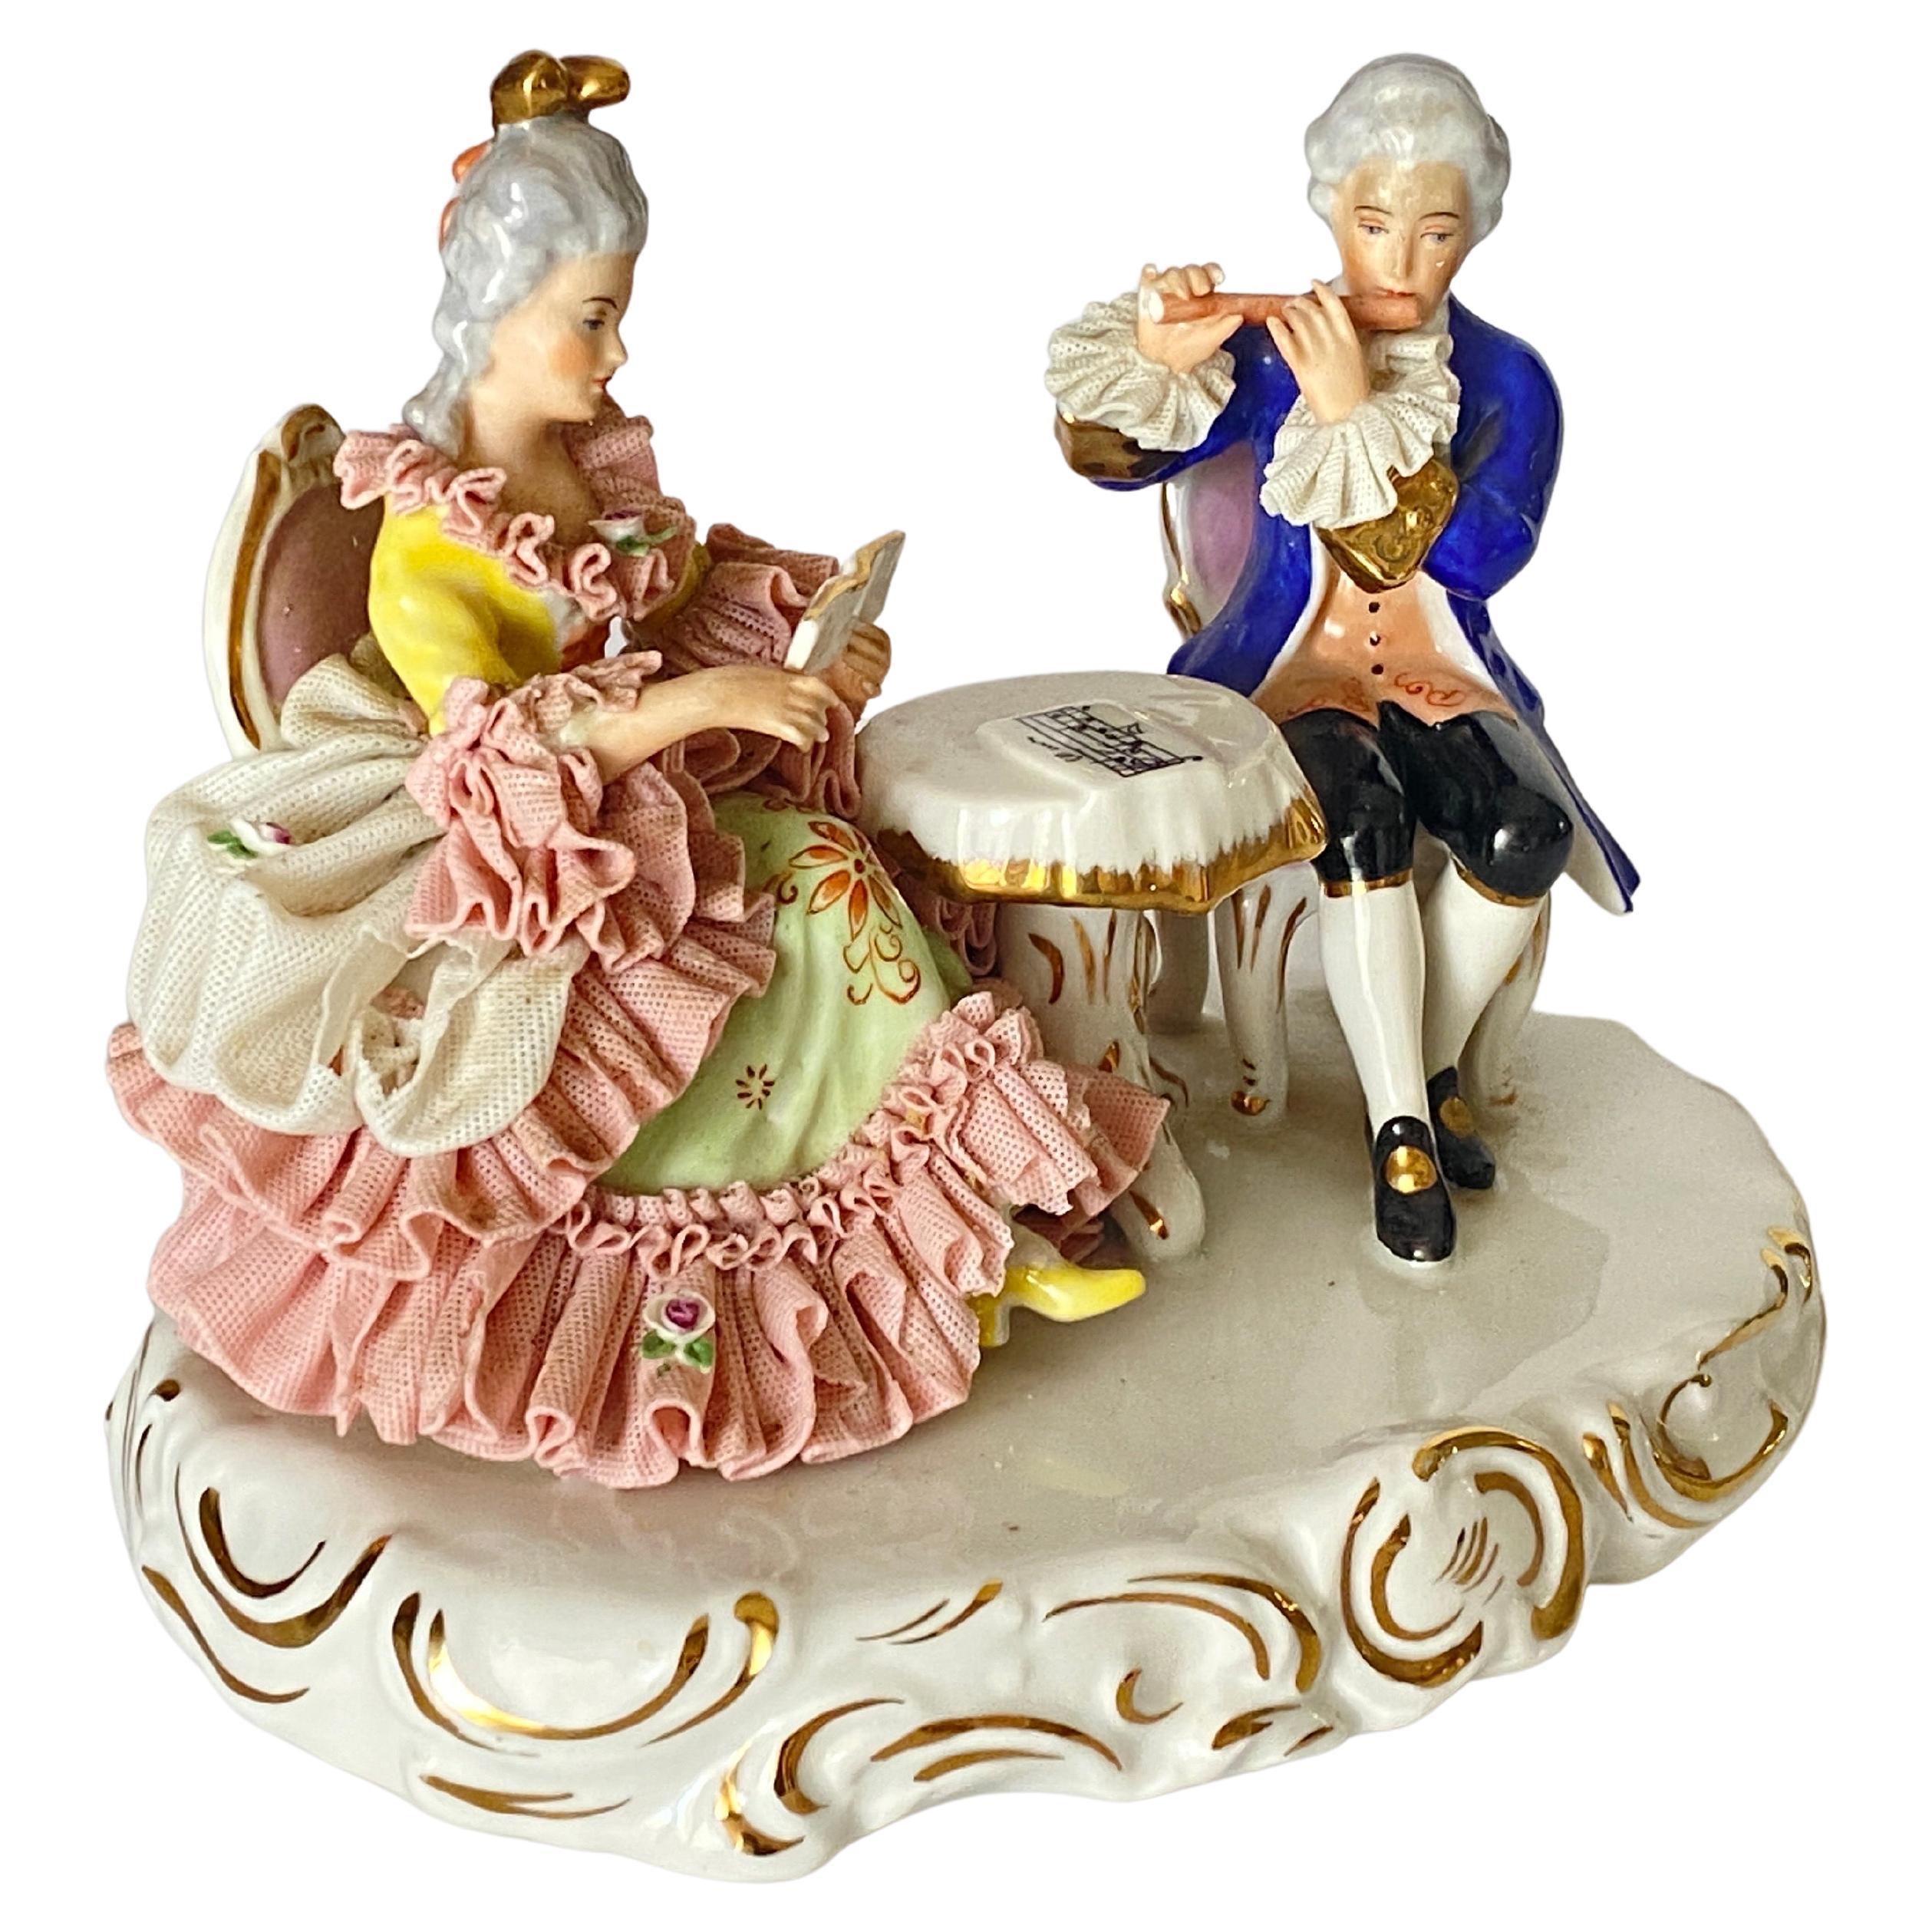 Groupe de figurines en porcelaine de Dresde en dentelle, deux personnes jouant aux échecs, bleu et rose